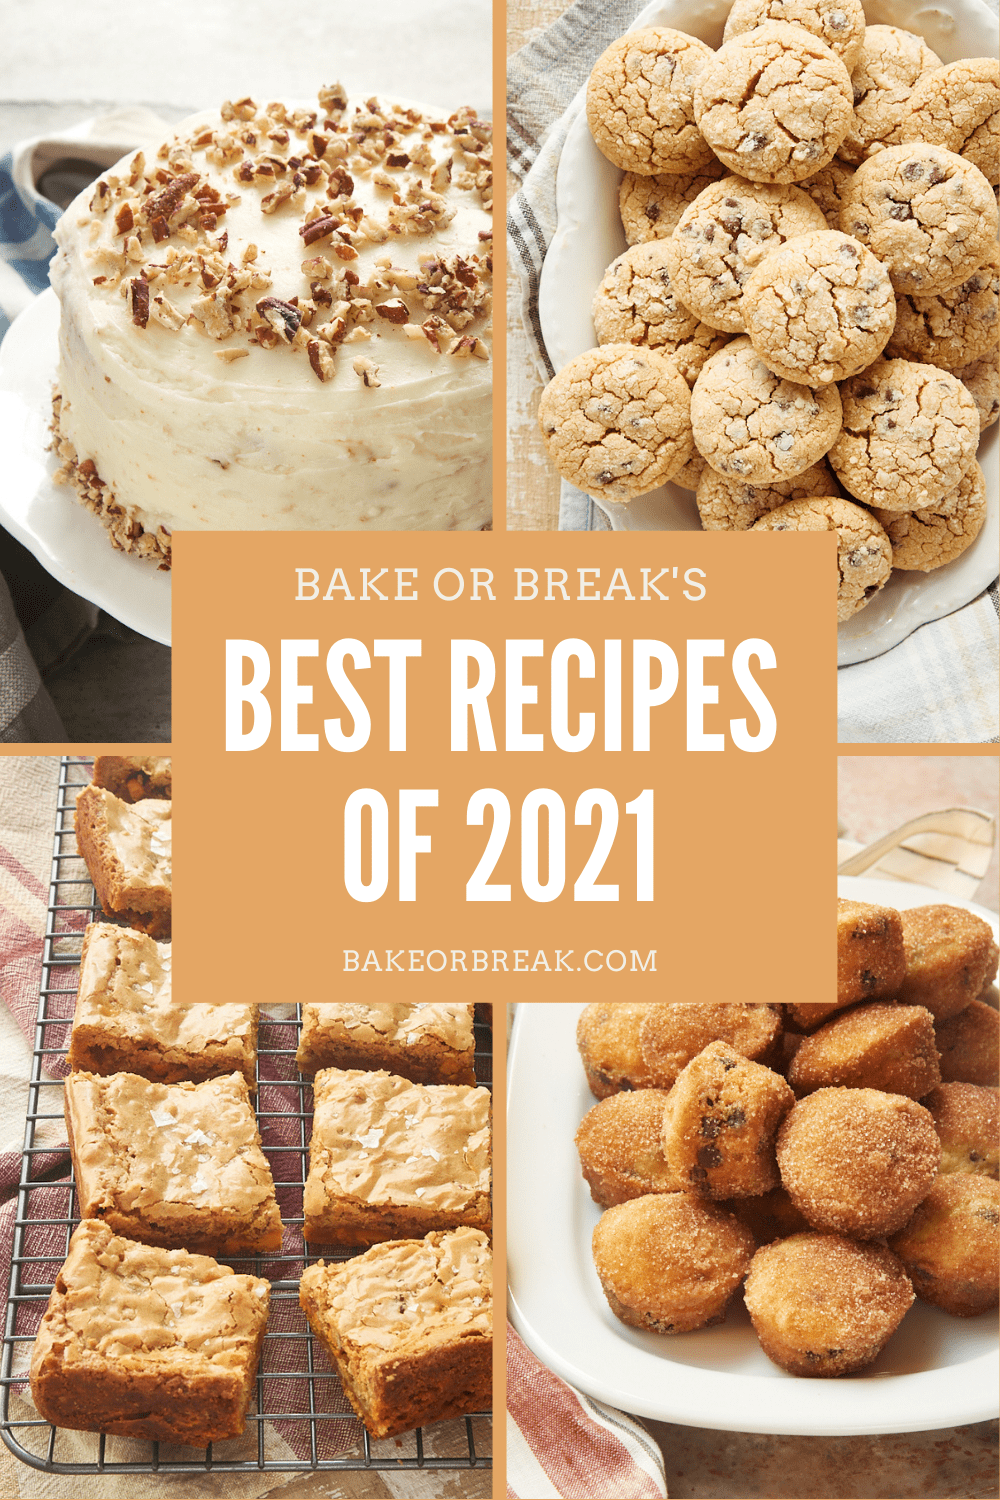 Bake or Break's Best Recipes of 2021 bakeorbreak.com